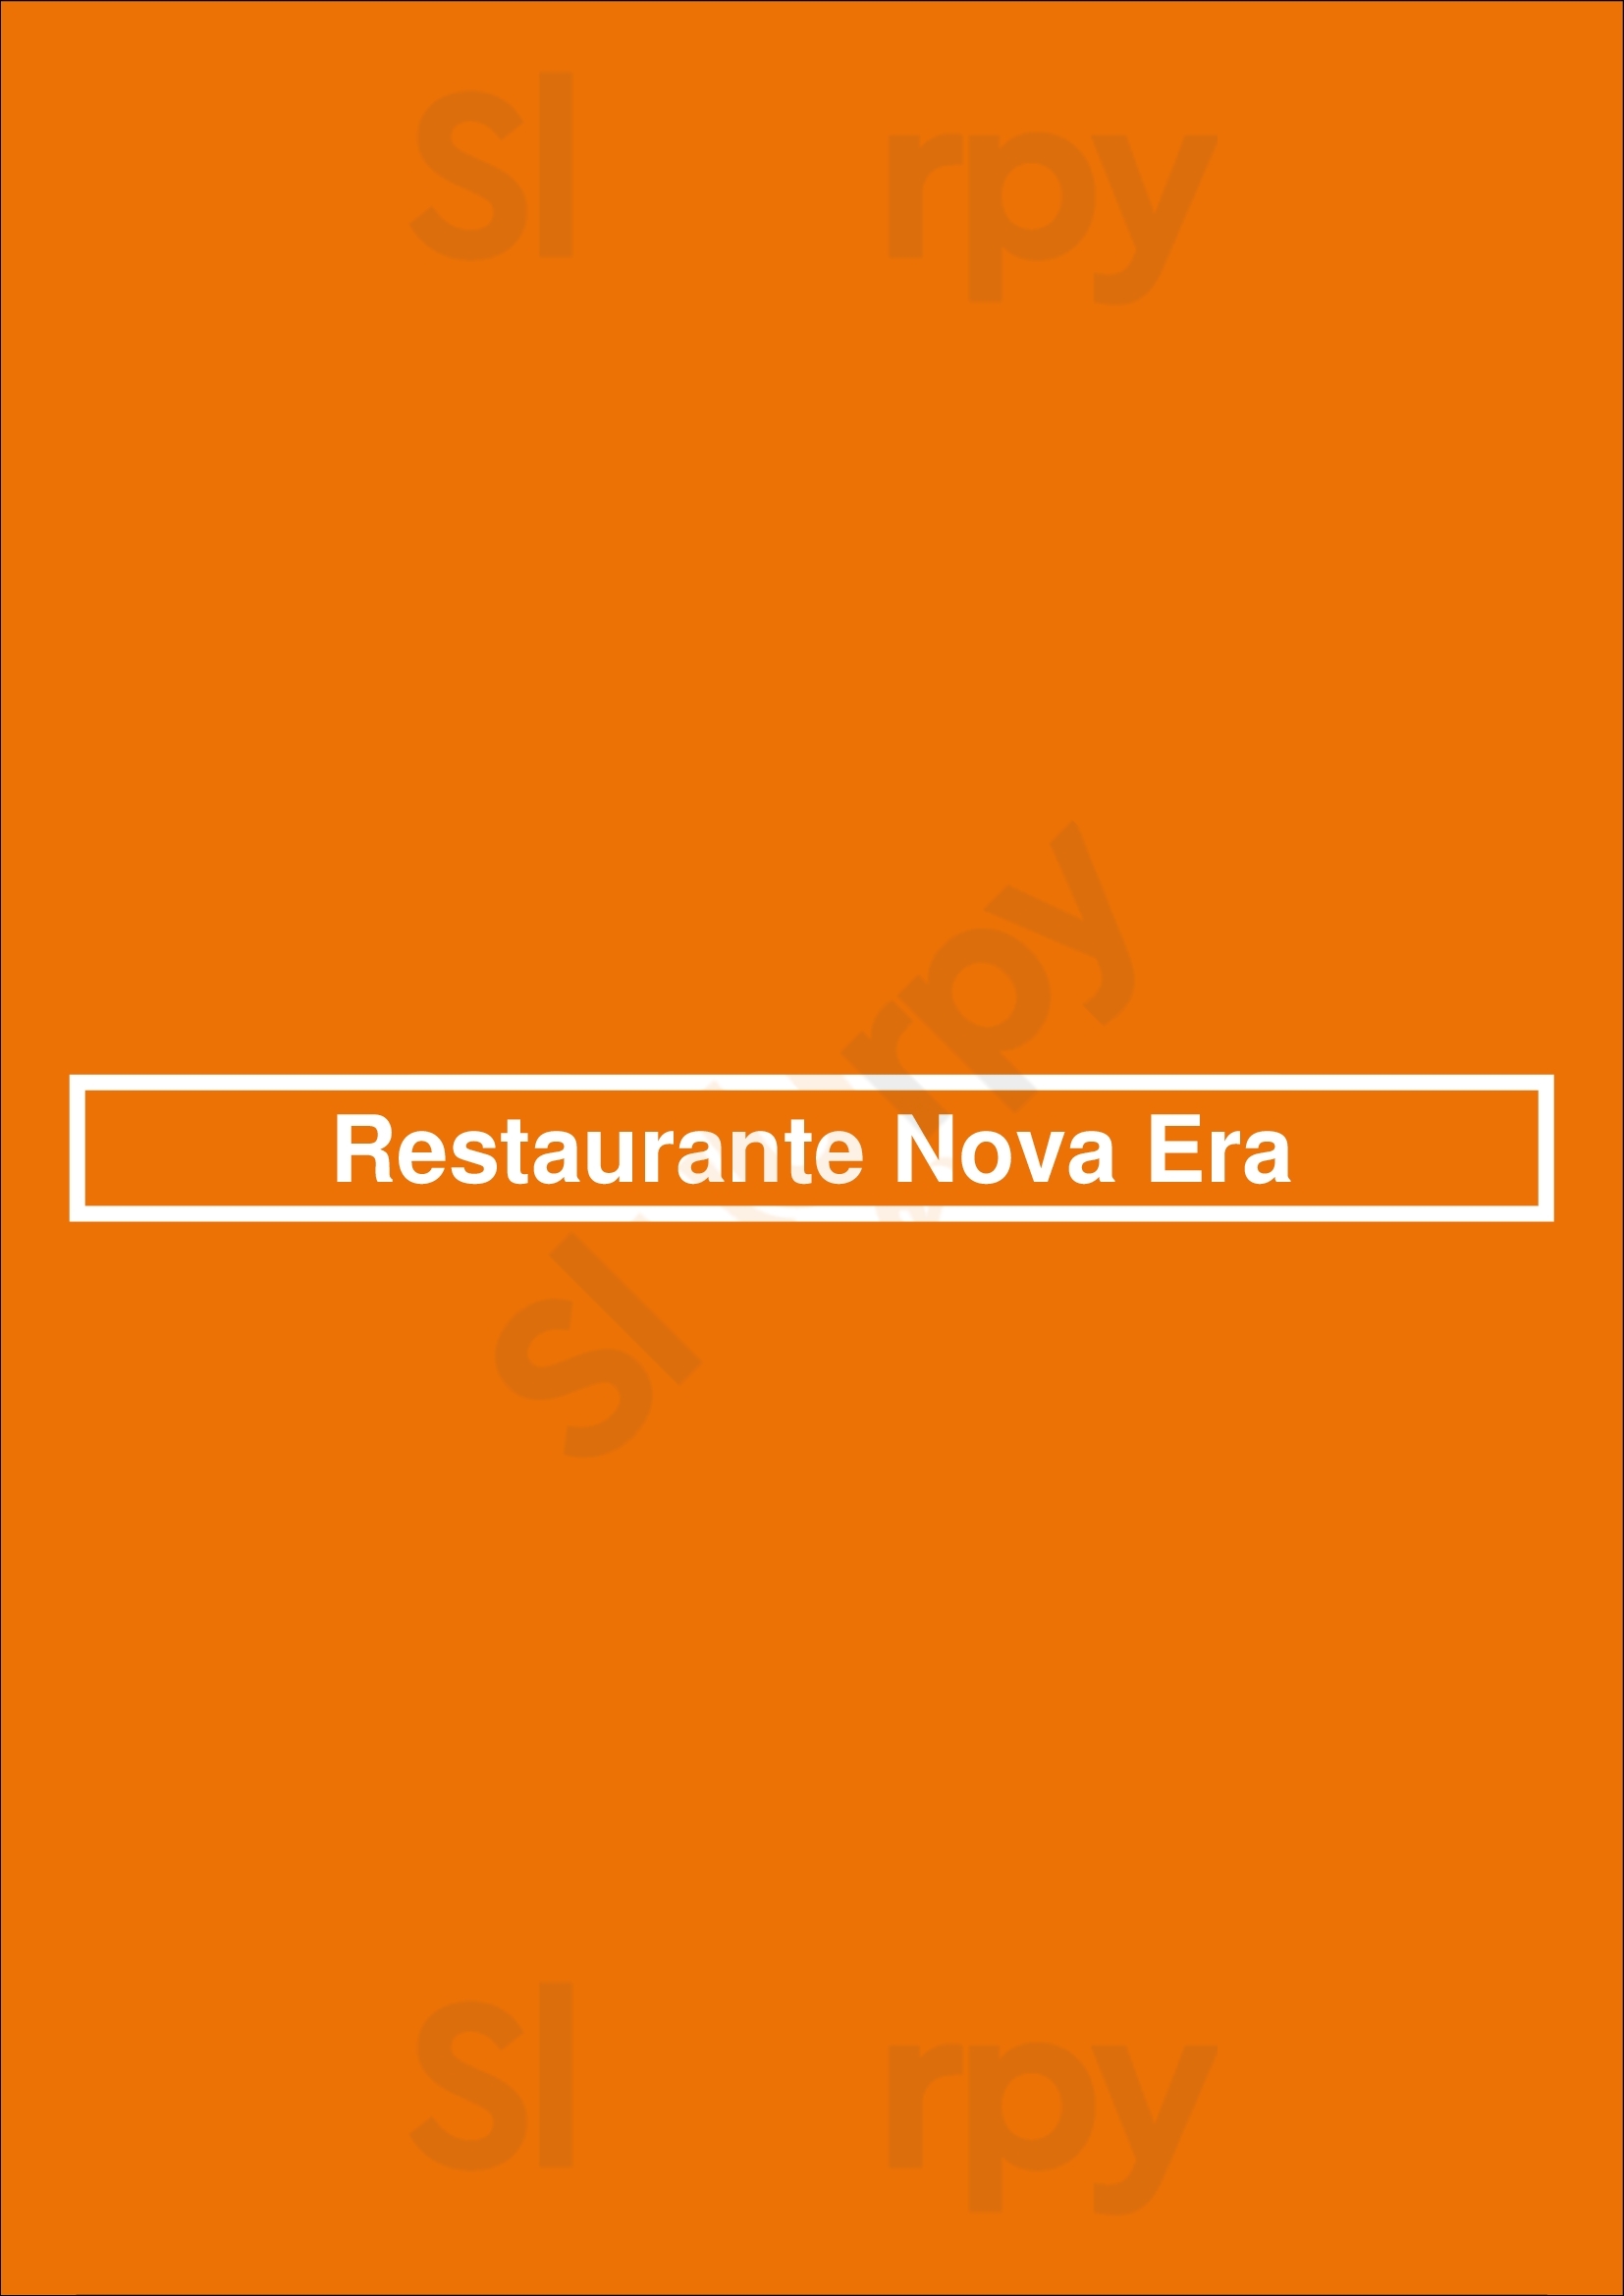 Restaurante Nova Era Porto Menu - 1